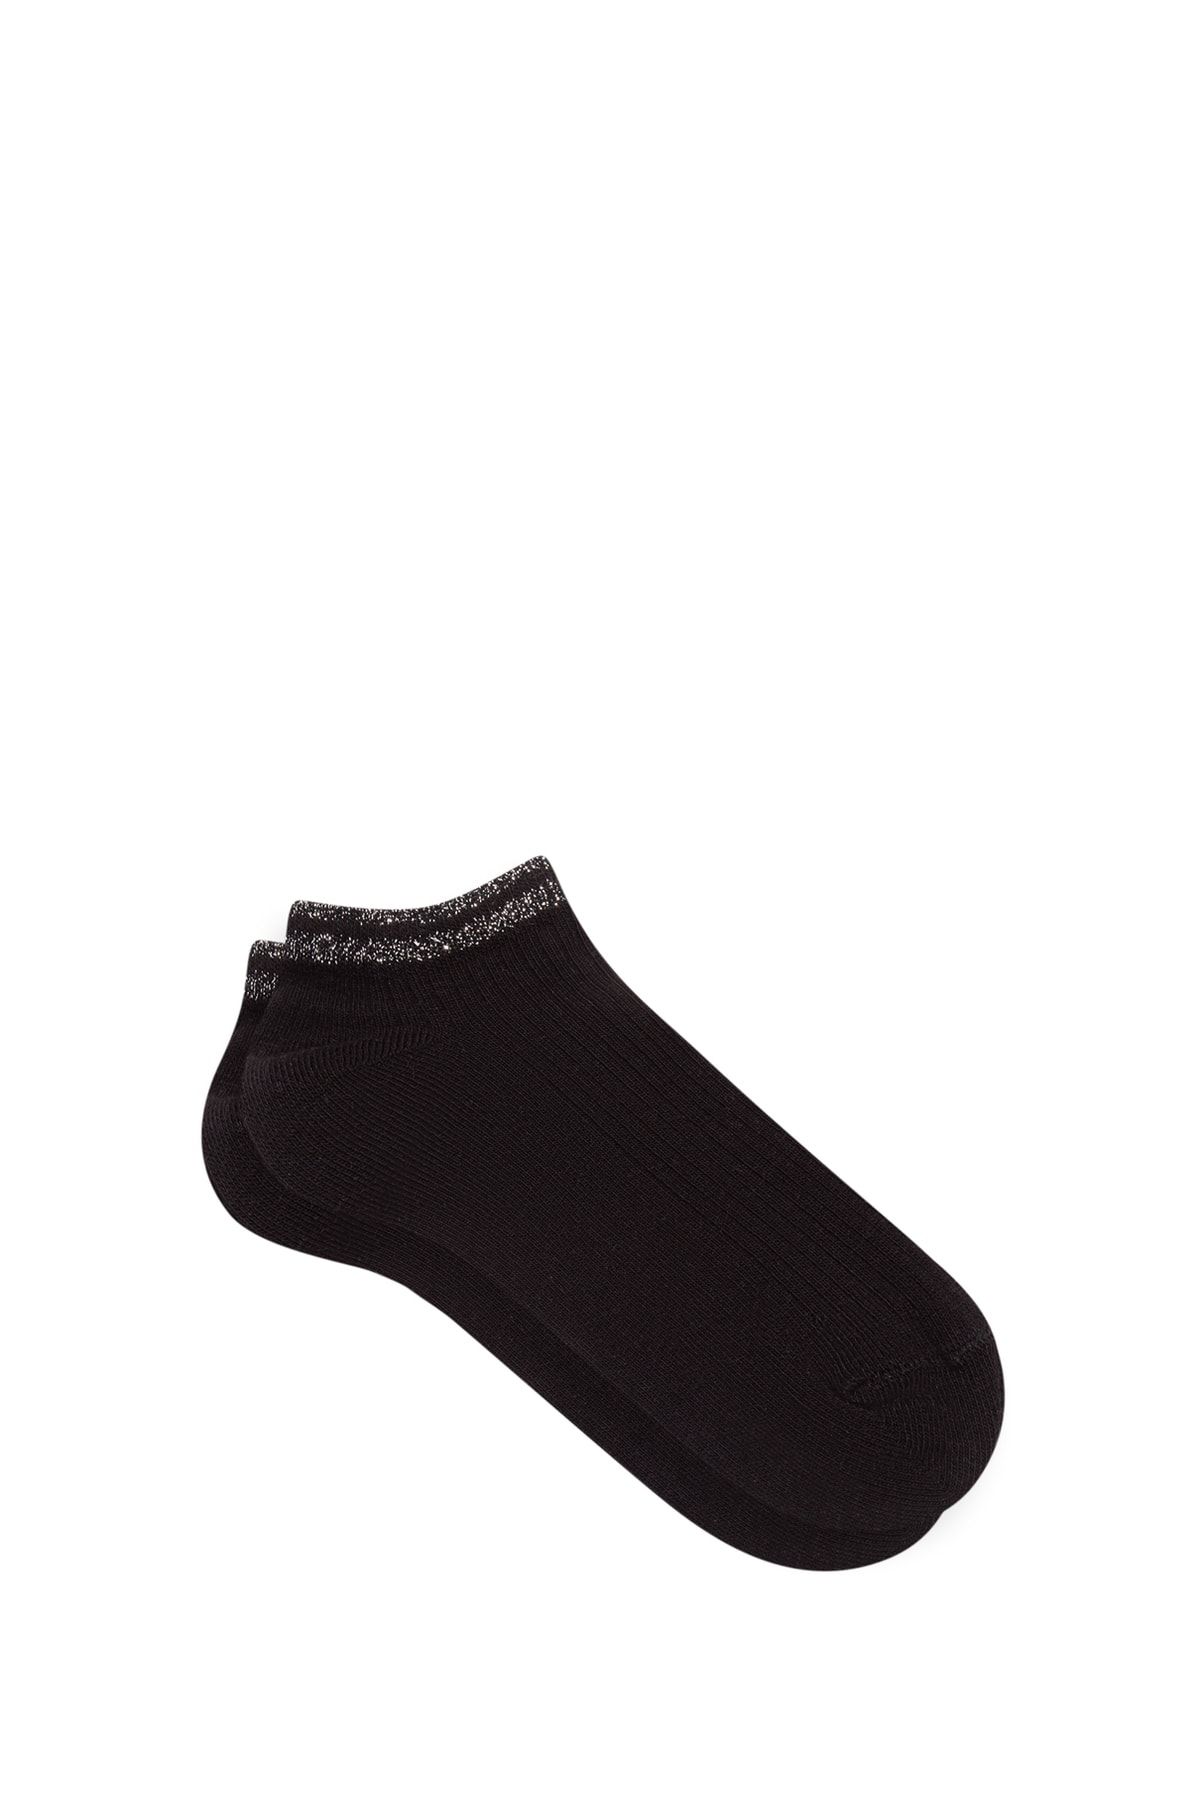 Mavi Siyah Patik Çorabı 1911353-900